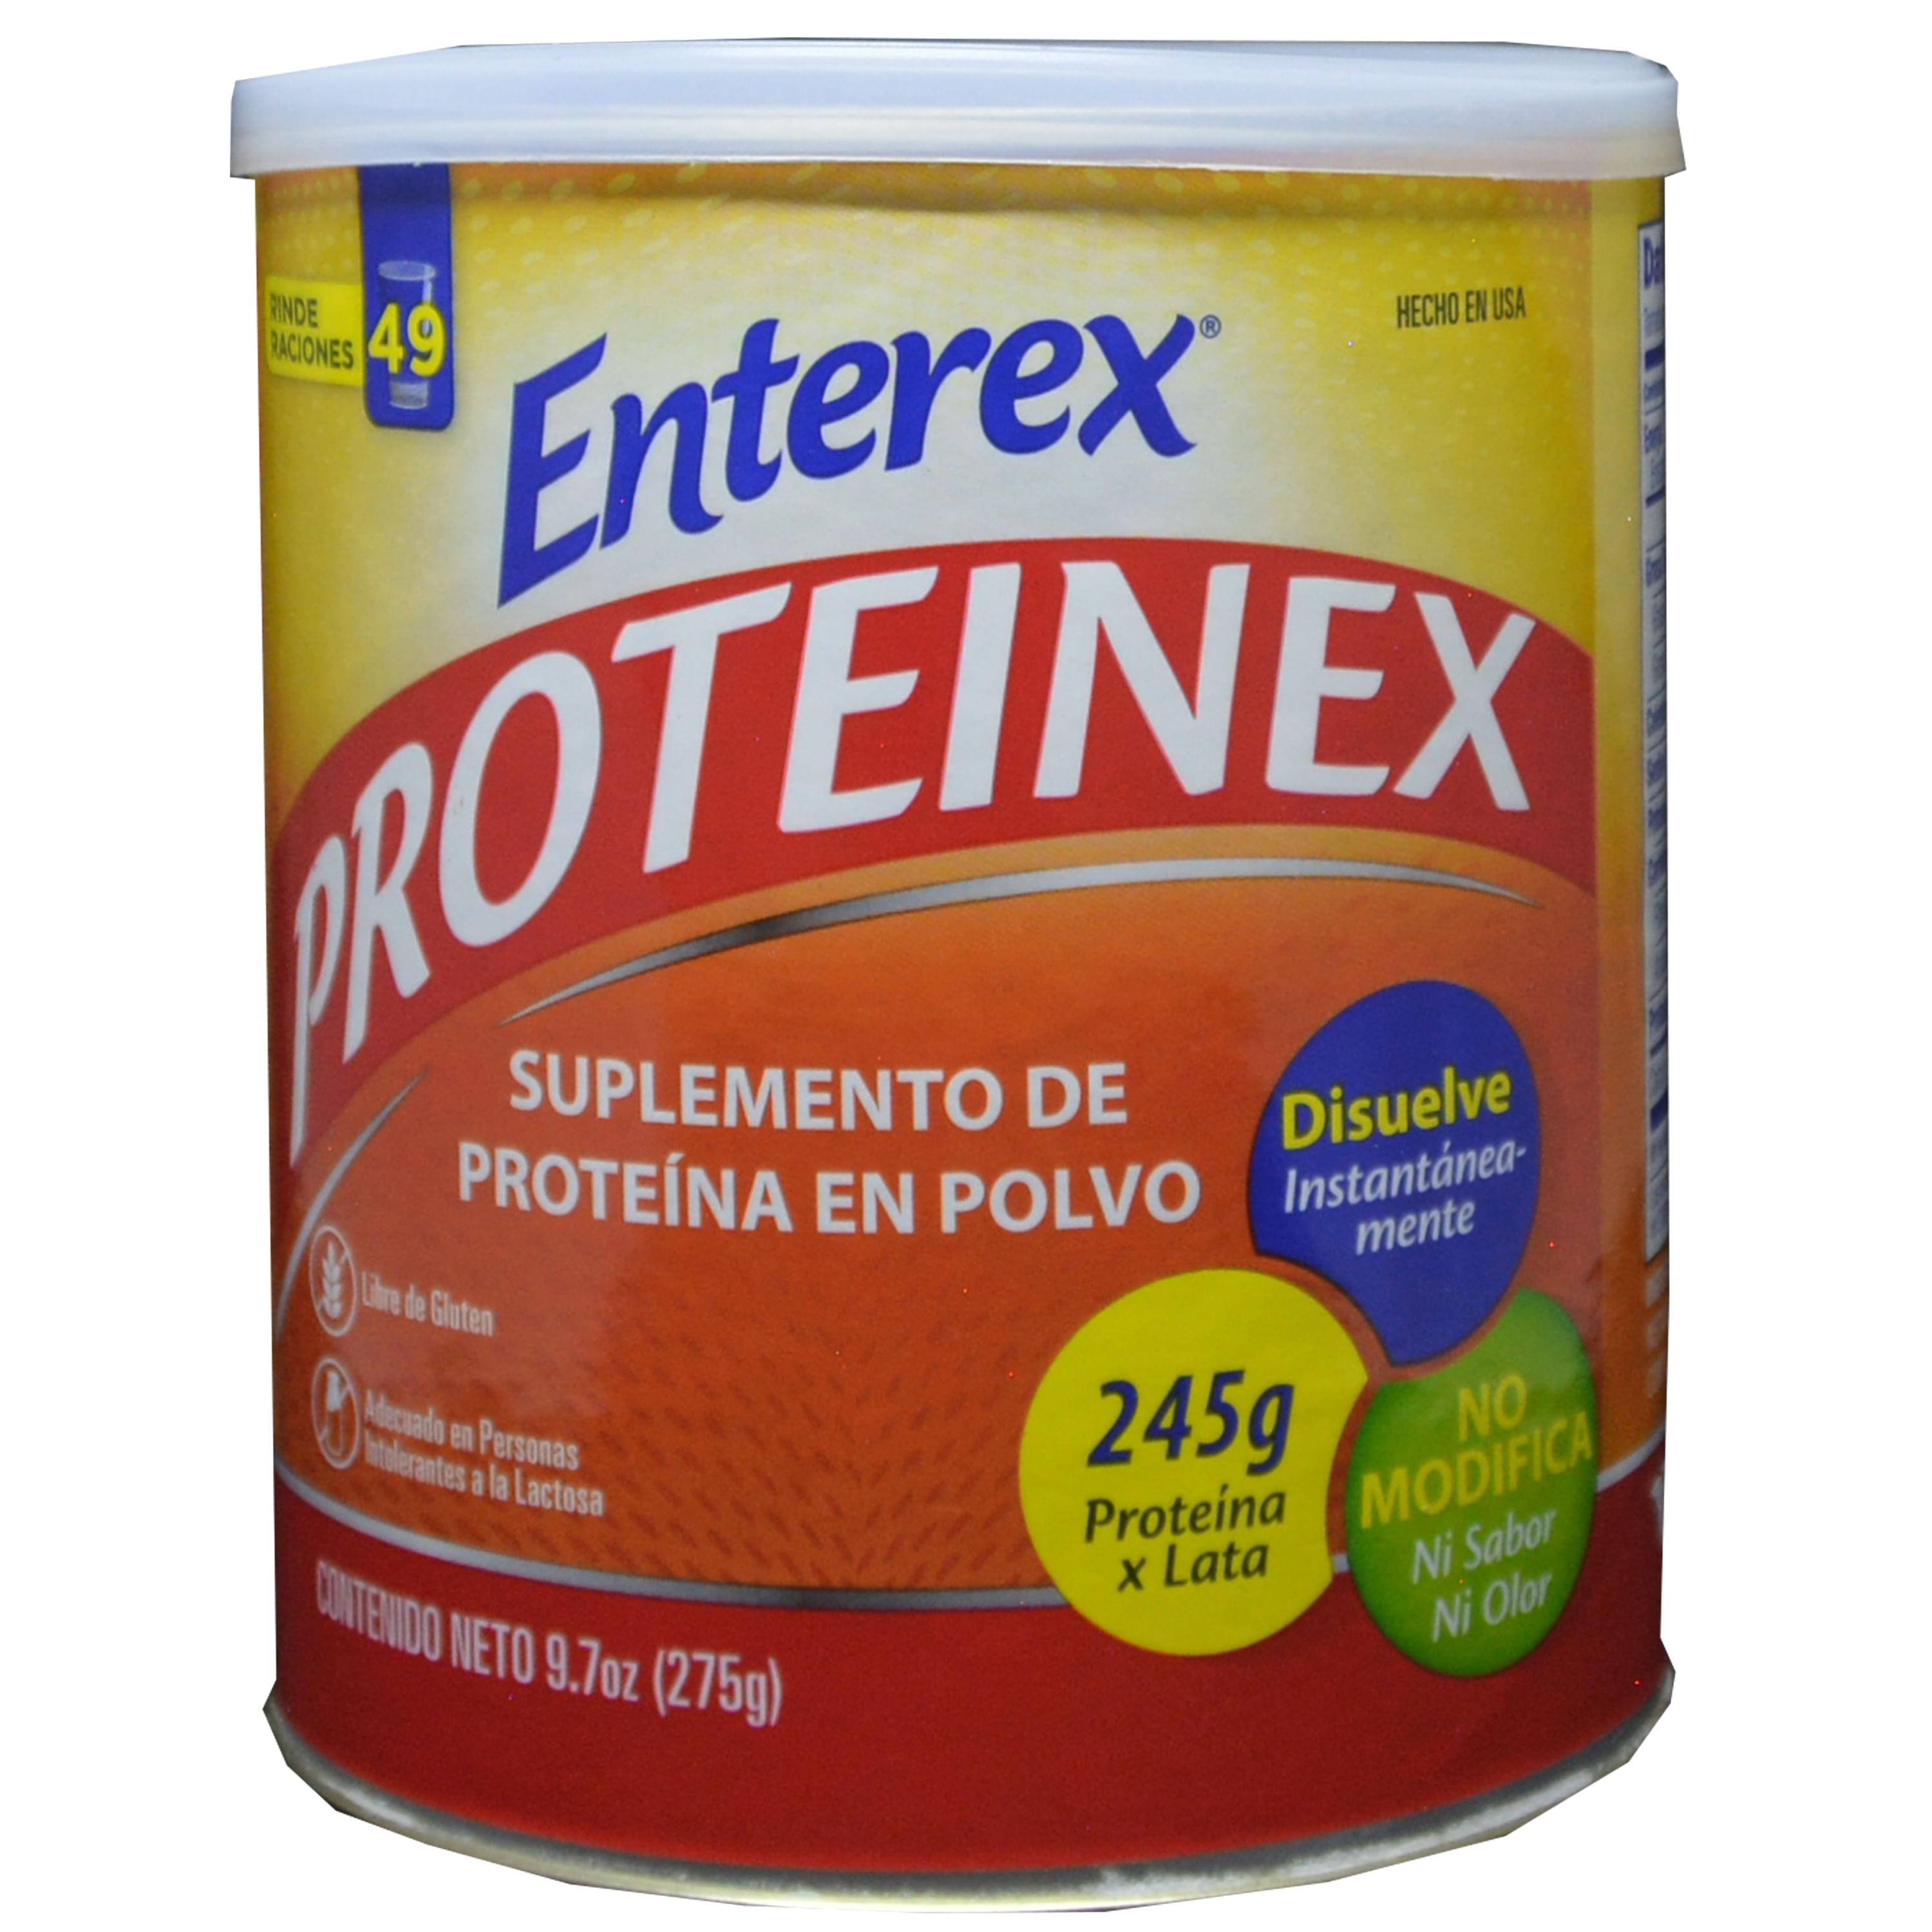 Enterex-Proteinex-275-G-1-34457